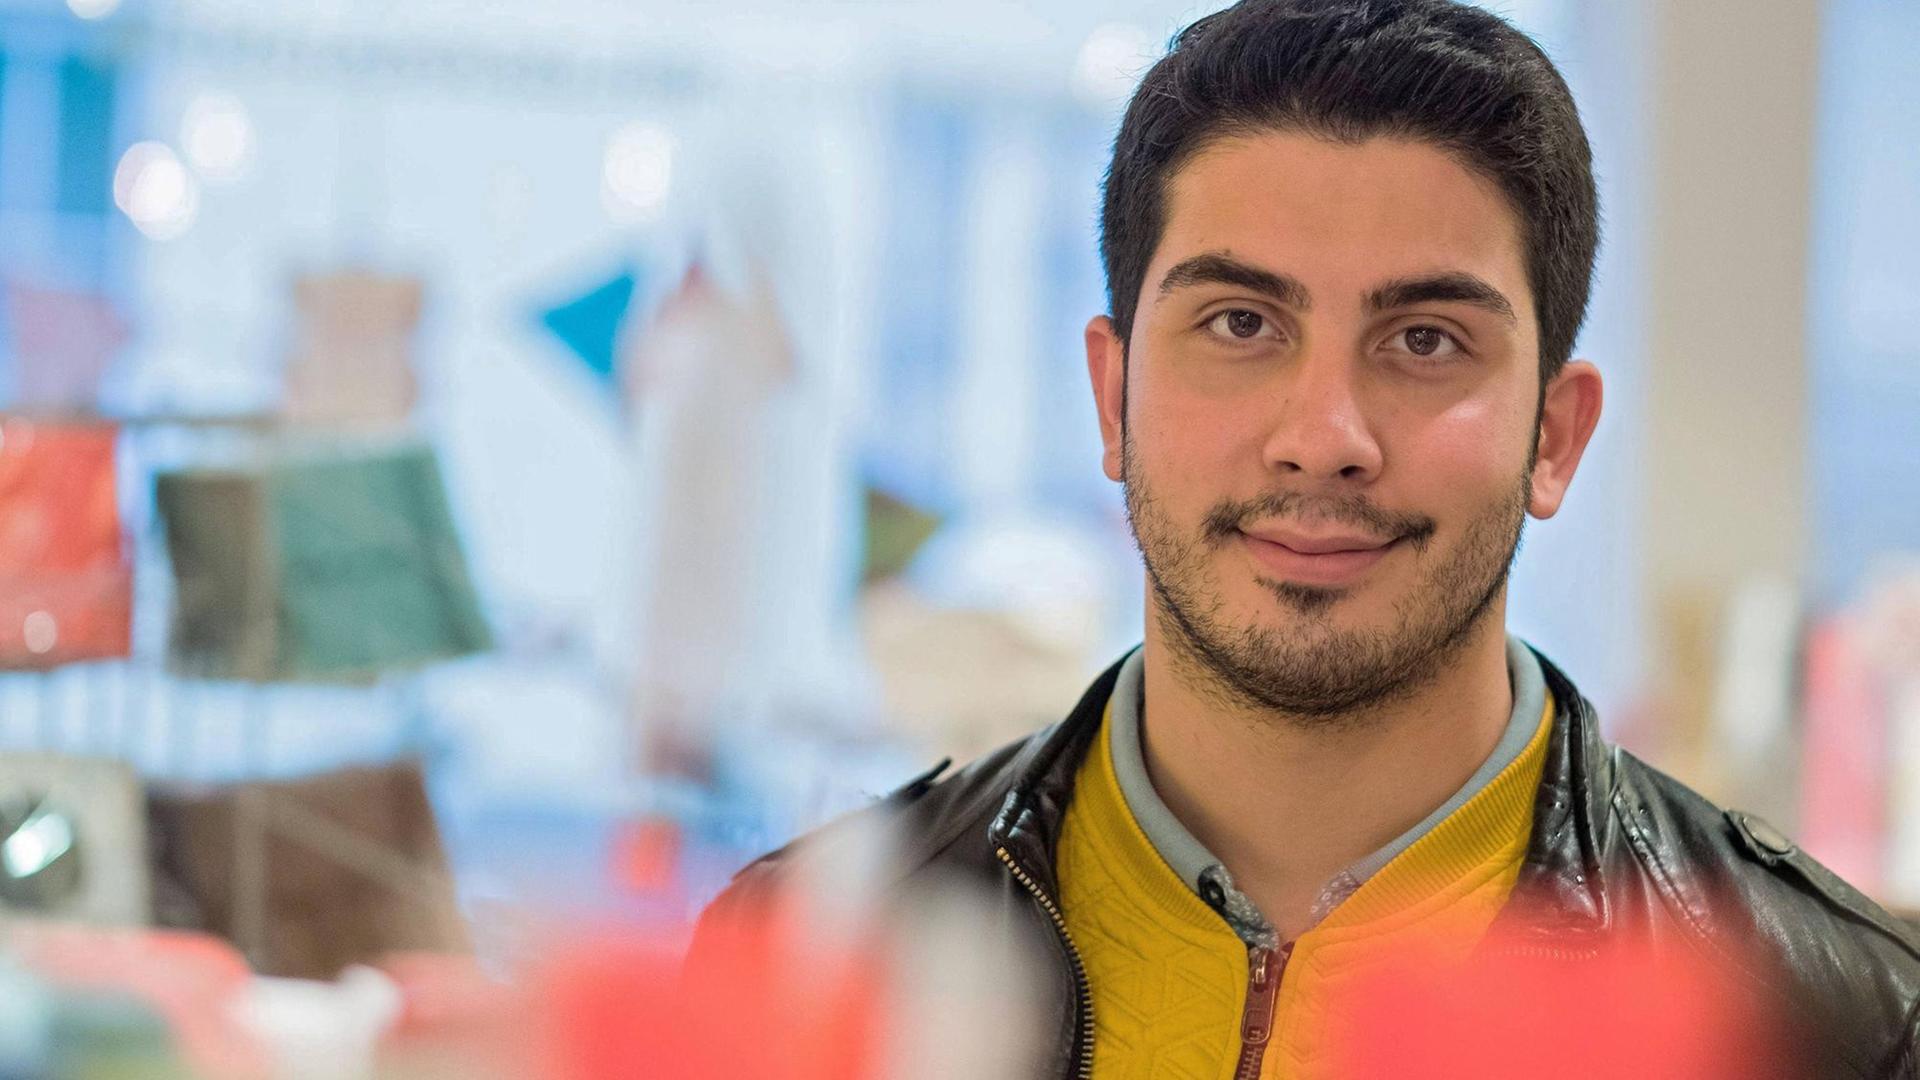 Ali Can, Student an der Uni Gießen, ist Gründer der "Hotline für besorgte Bürger" und der #MeTwo-Debatte auf Twitter über Rassismus